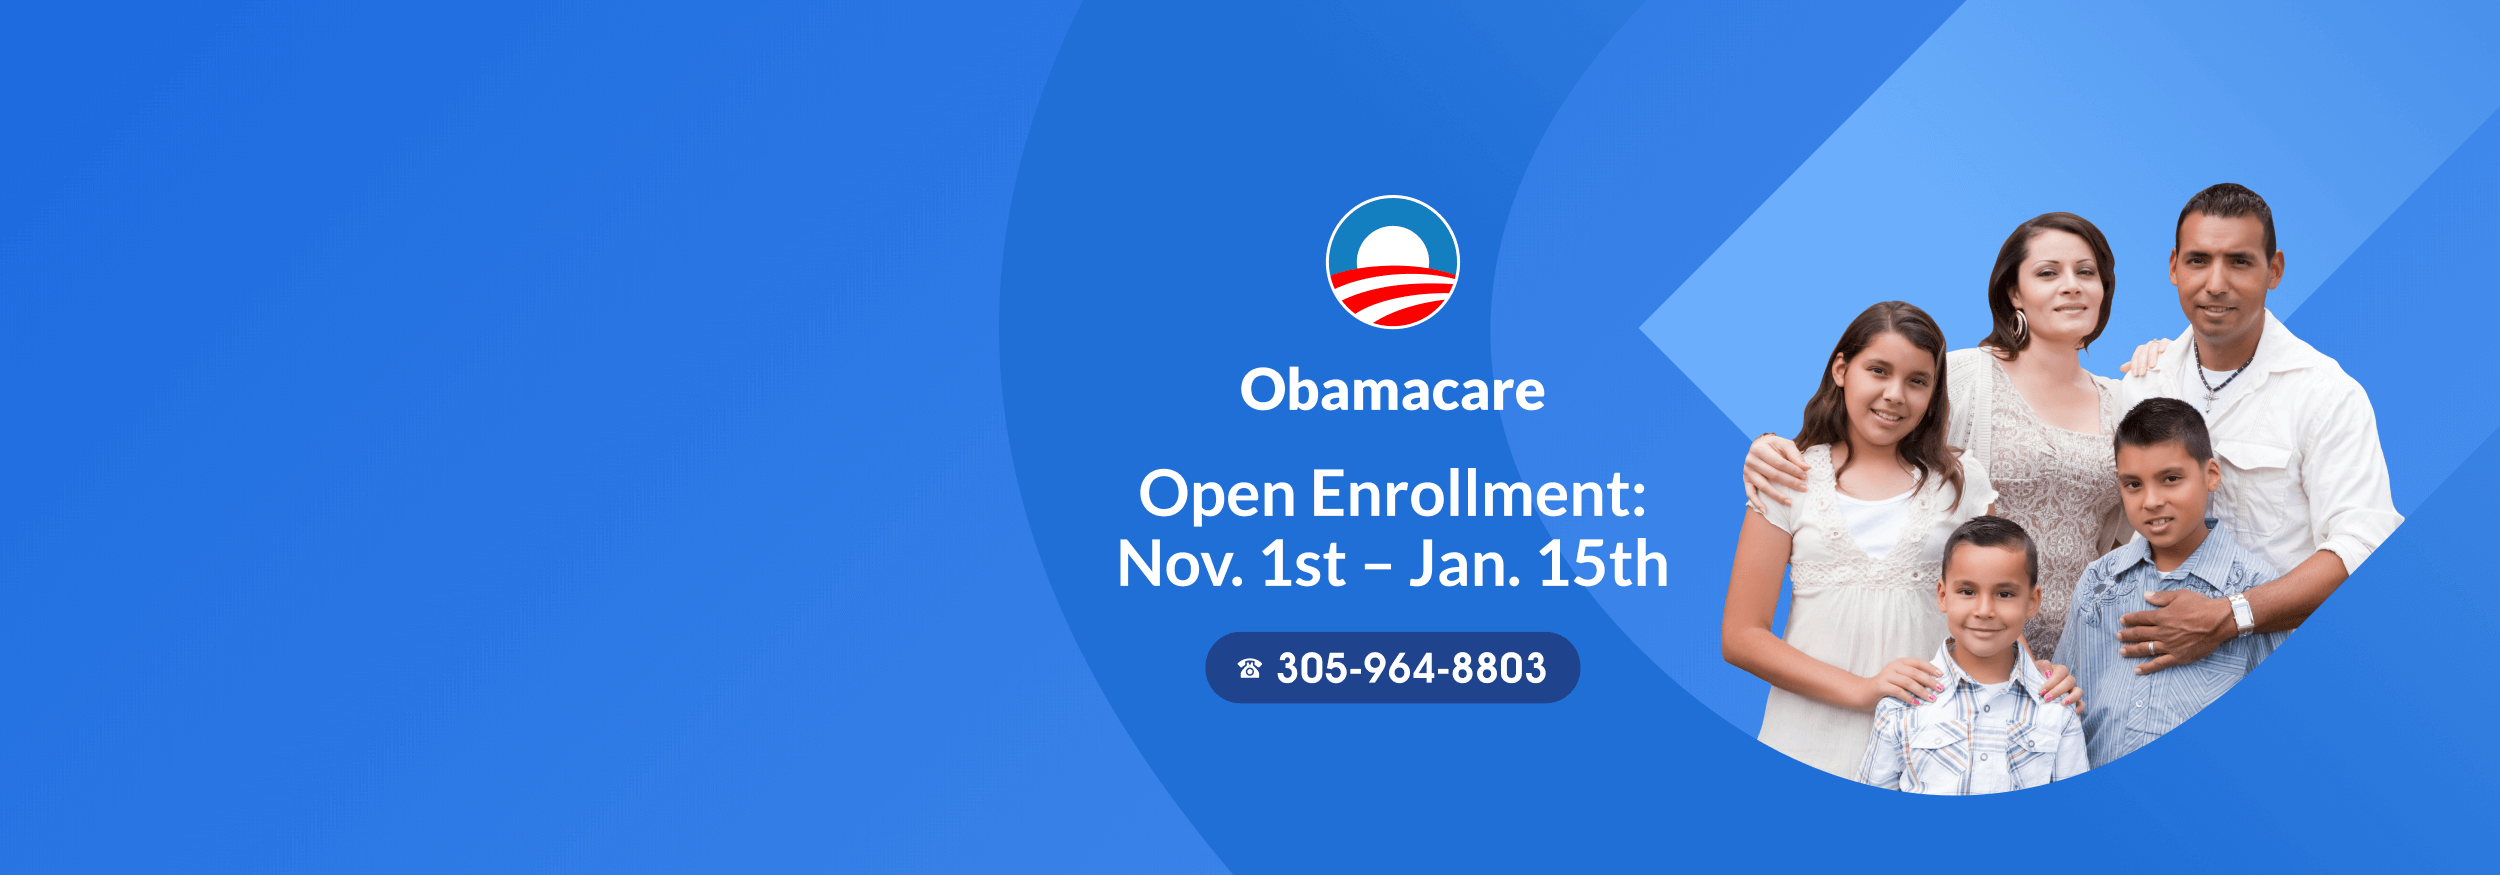 Obamacare Open Enrollment